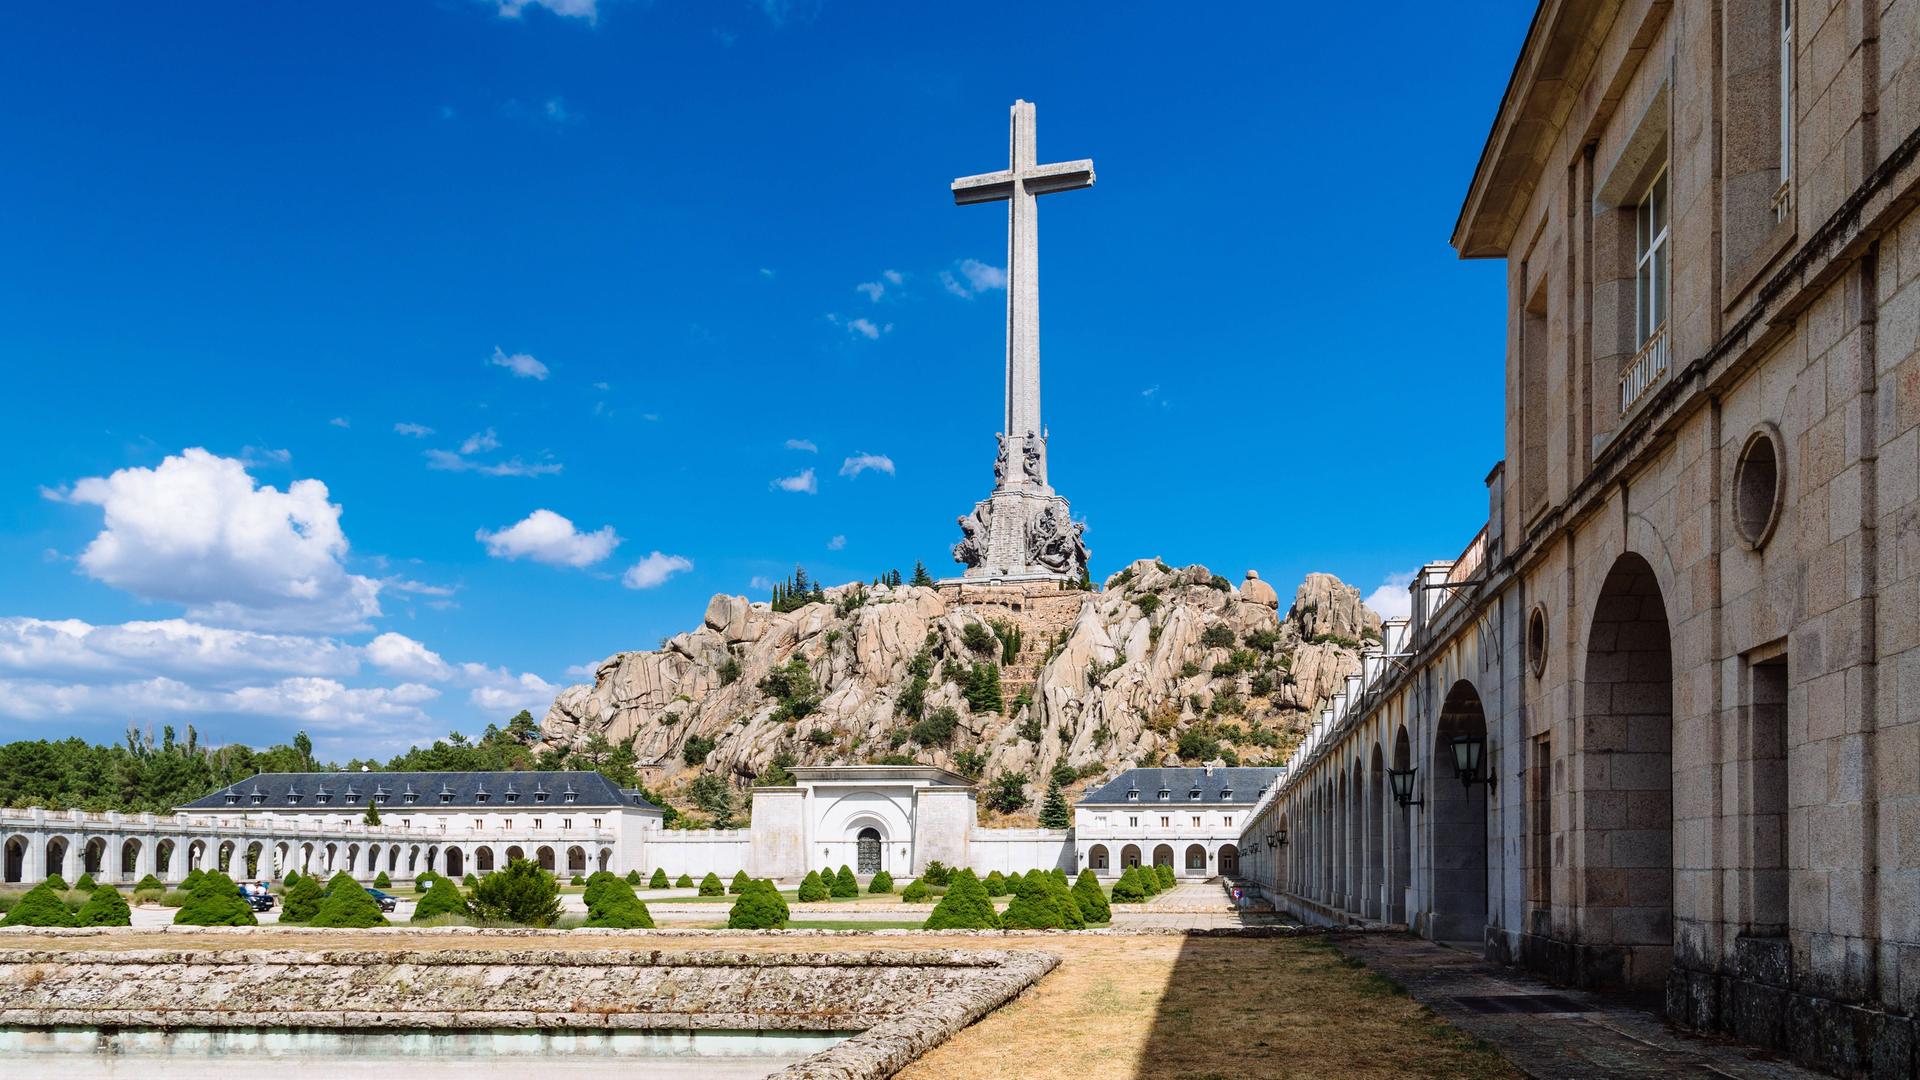 Eine Kirche und ein riesiges Kreuz auf einer Felsenanhöhe in Valle de Los Caidos in Spanien. Neben der Kirche in Mausoleum.